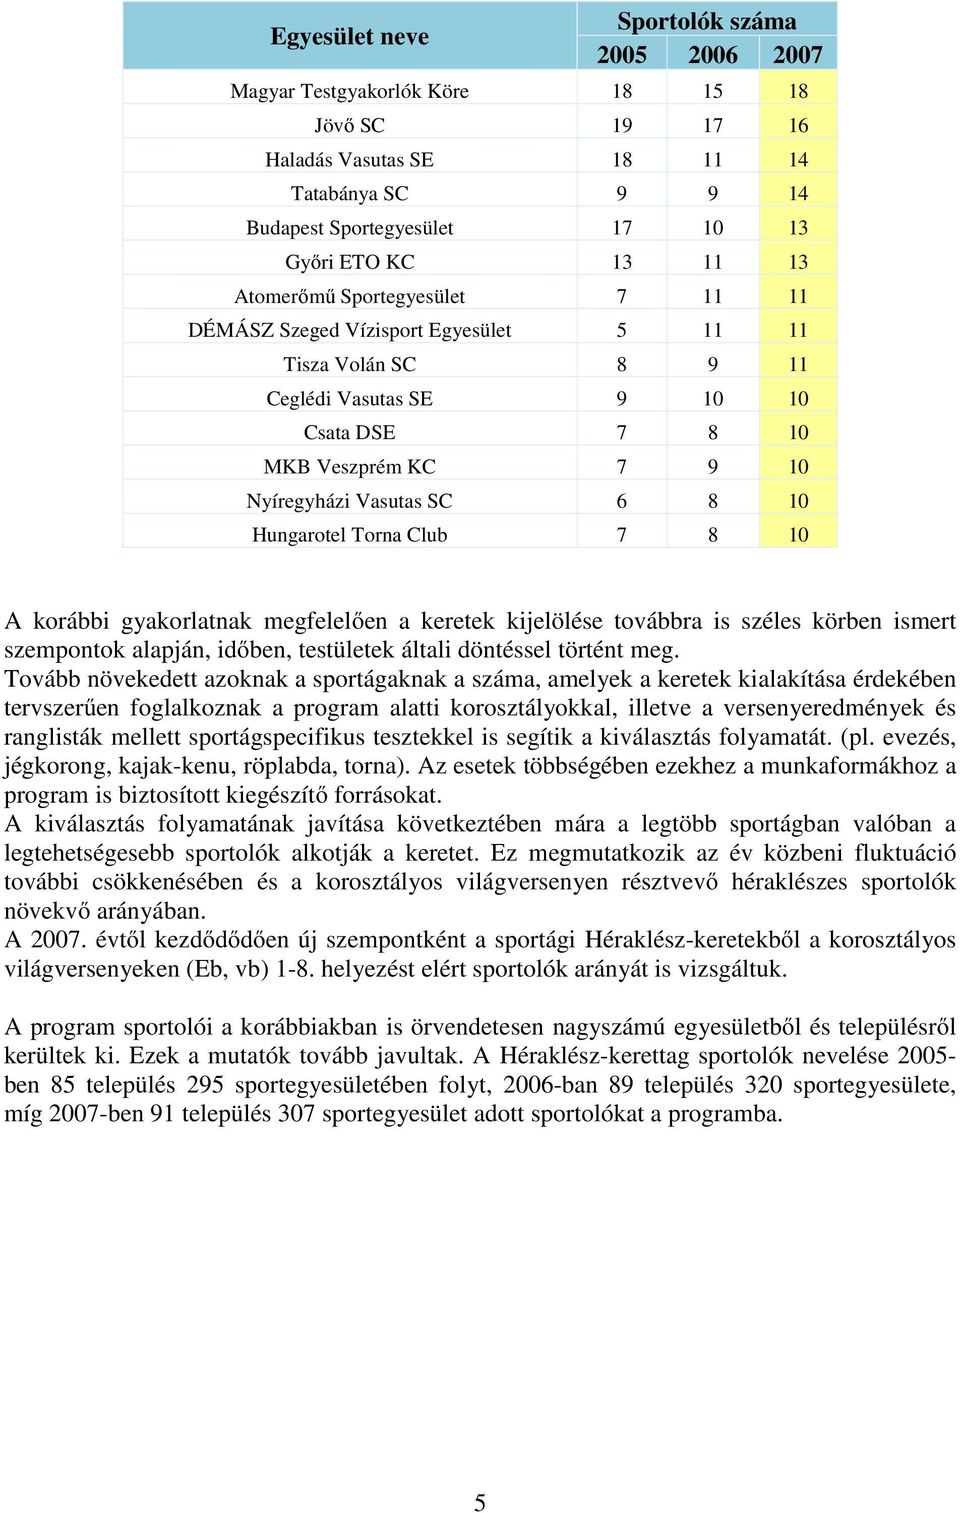 Hungarotel Torna Club 7 8 10 A korábbi gyakorlatnak megfelelően a keretek kijelölése továbbra is széles körben ismert szempontok alapján, időben, testületek általi döntéssel történt meg.